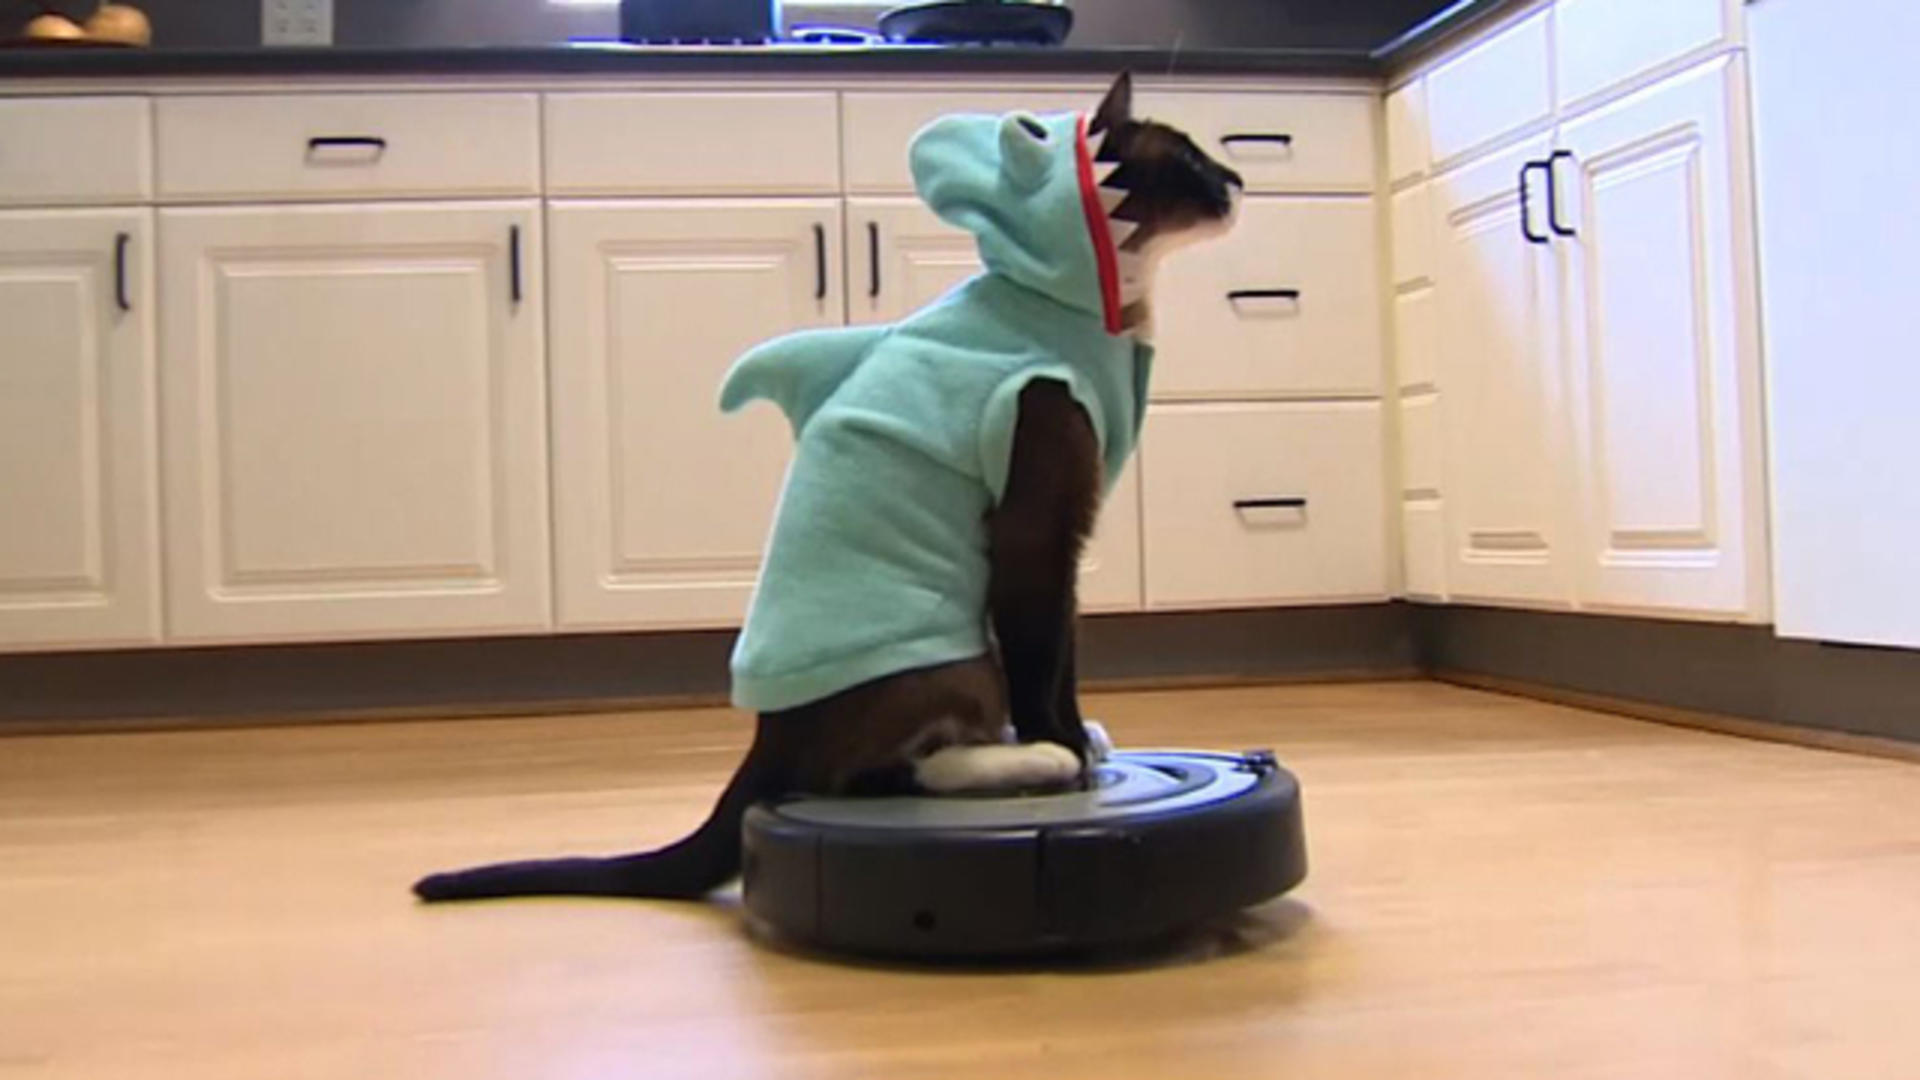 Shark-Cat: Meet the Roomba-riding CBS News